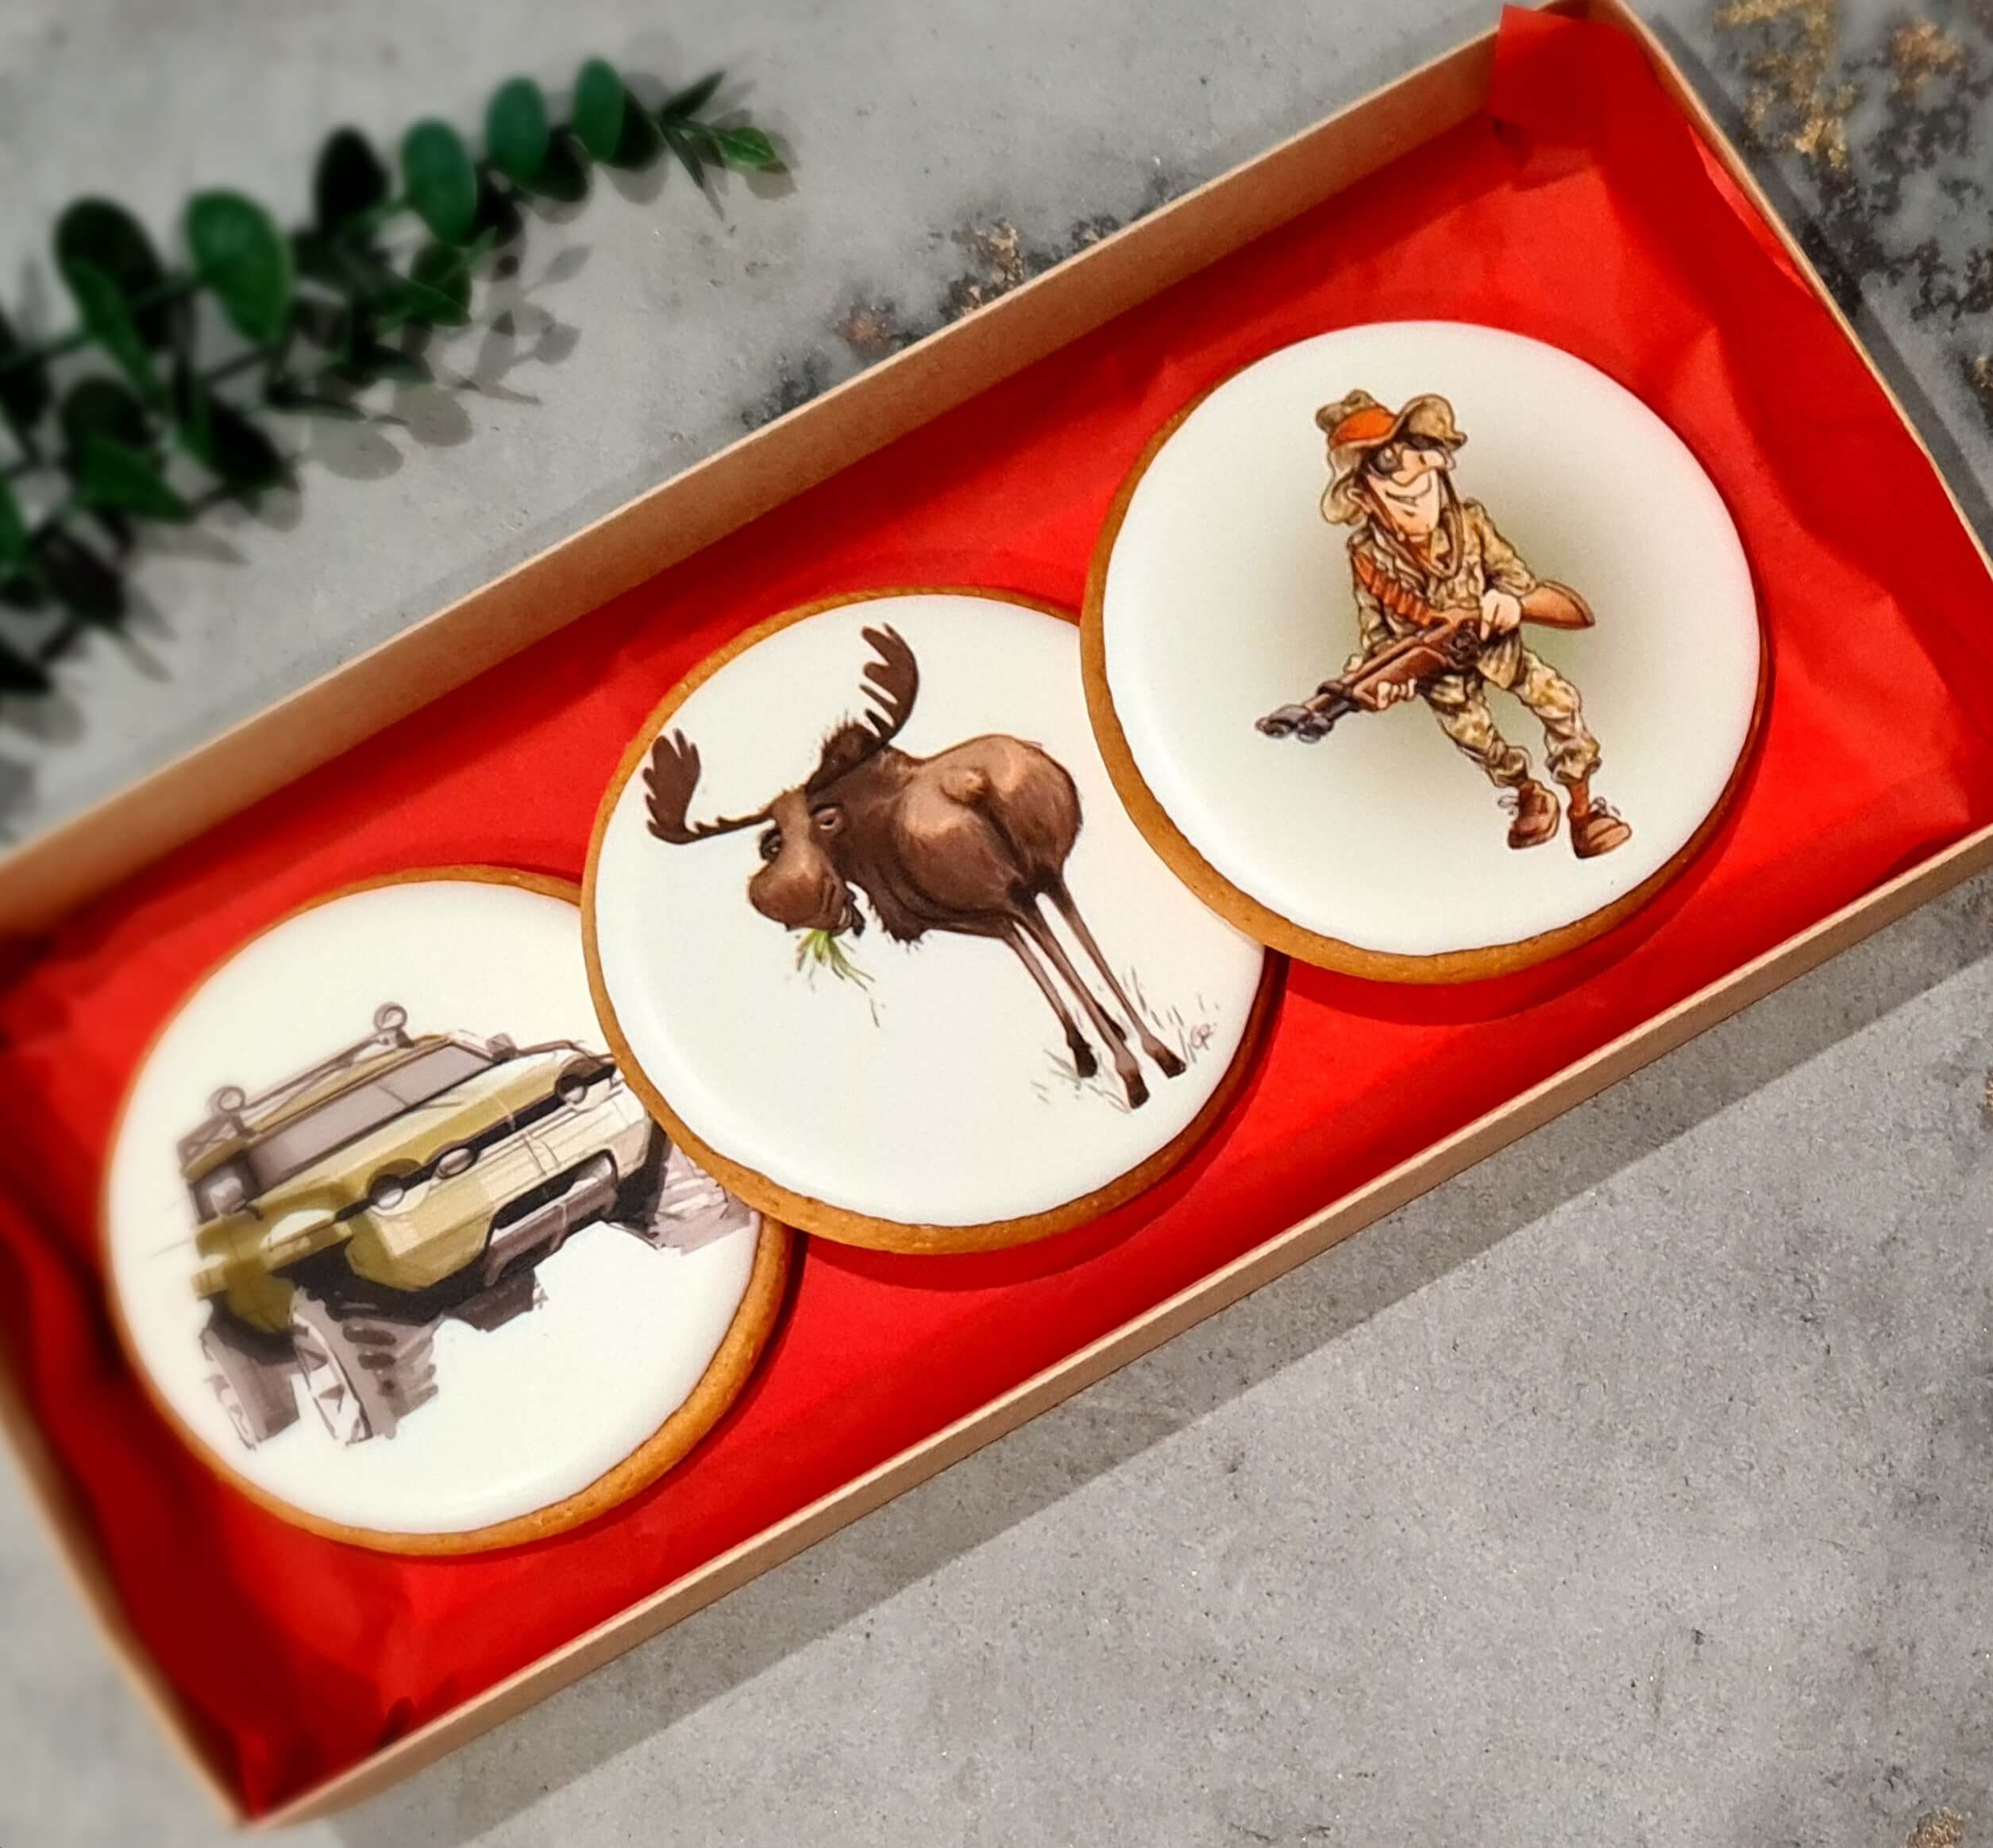 Dekoruoti imbieriniai sausainiai „Medžioklė“